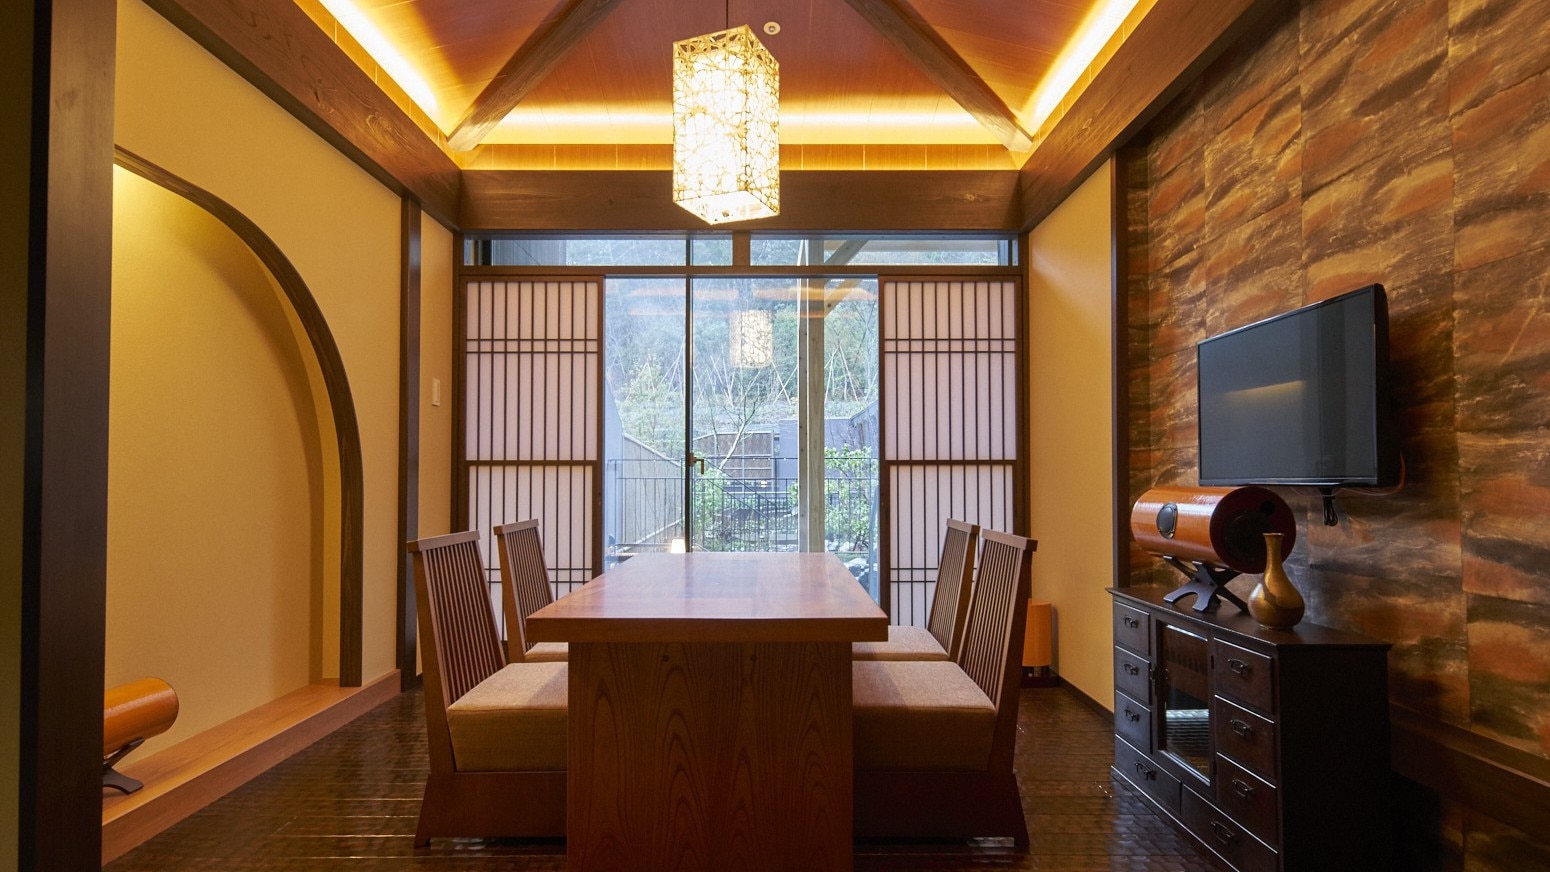 帶露天浴池的特別房間“箱根友山”大涌谷的房間是古老民居的形象